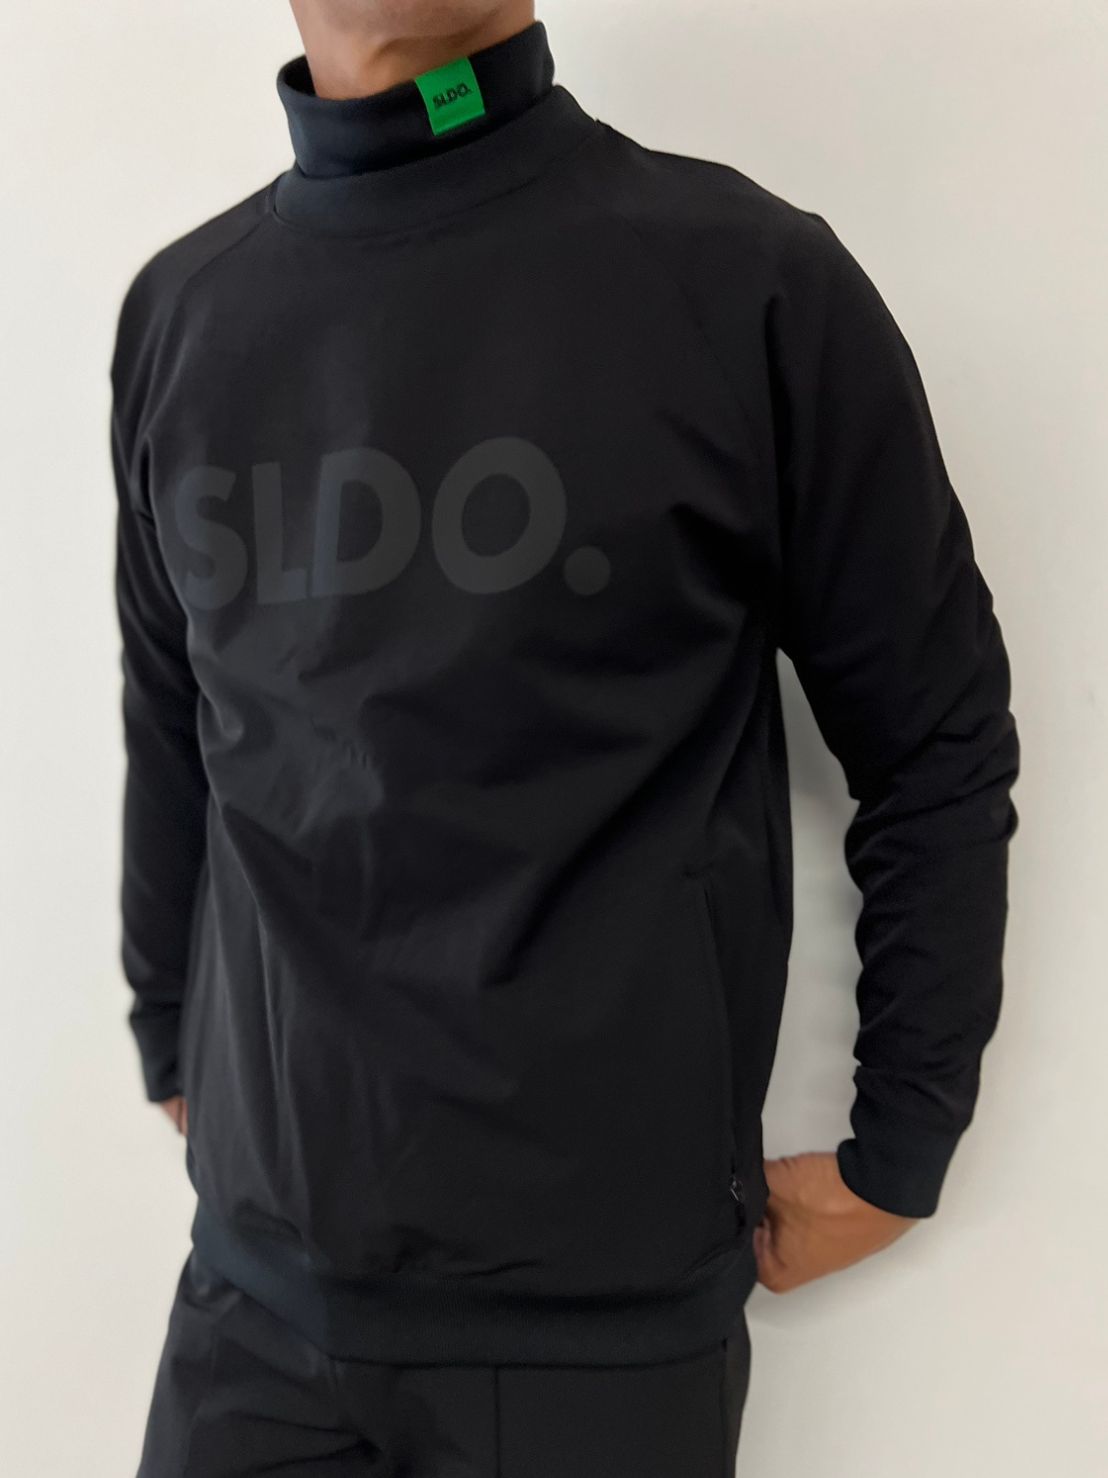 SLDO. × AddElm 裏起毛ストレッチハイネックロングスリーブTシャツ 